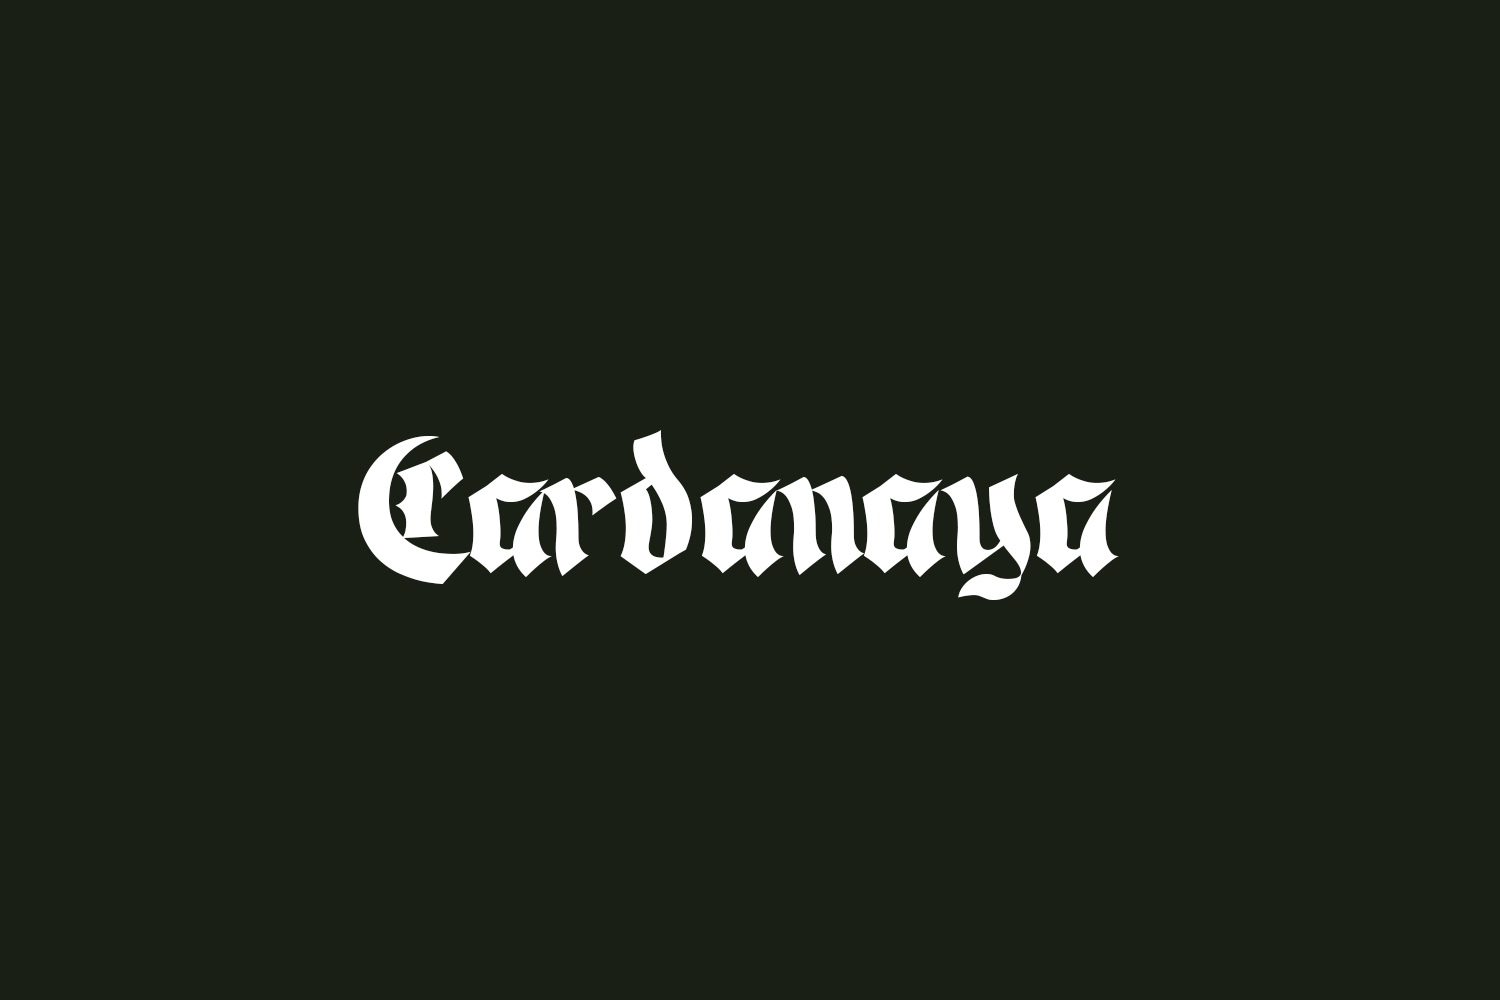 Cardanaya Free Font